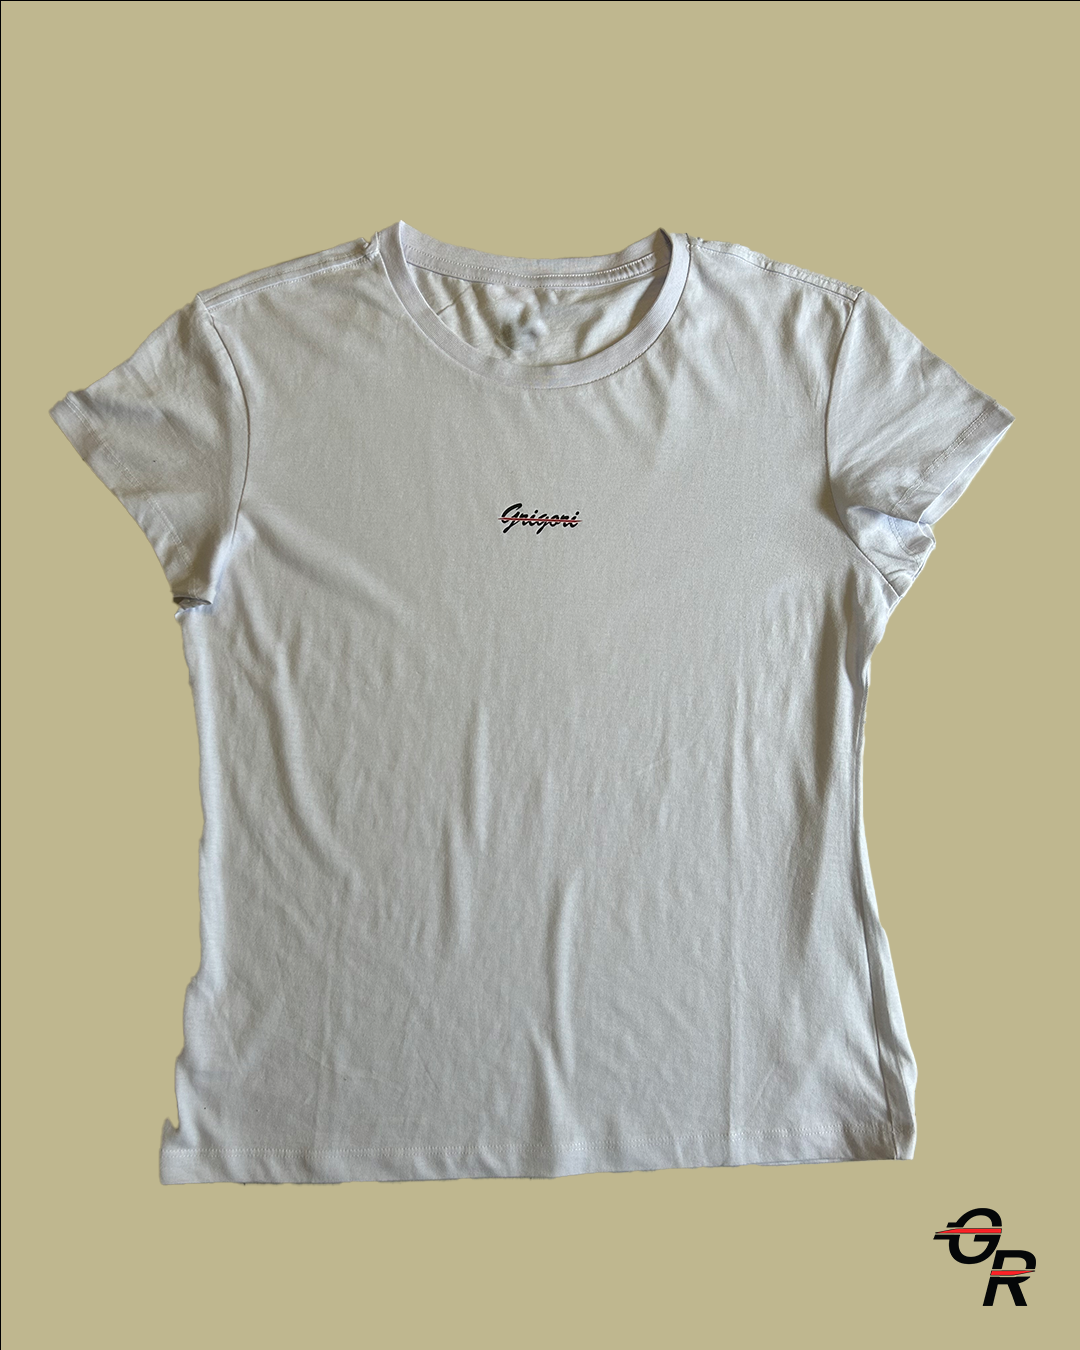 Grigori Womens Essential T-Shirt